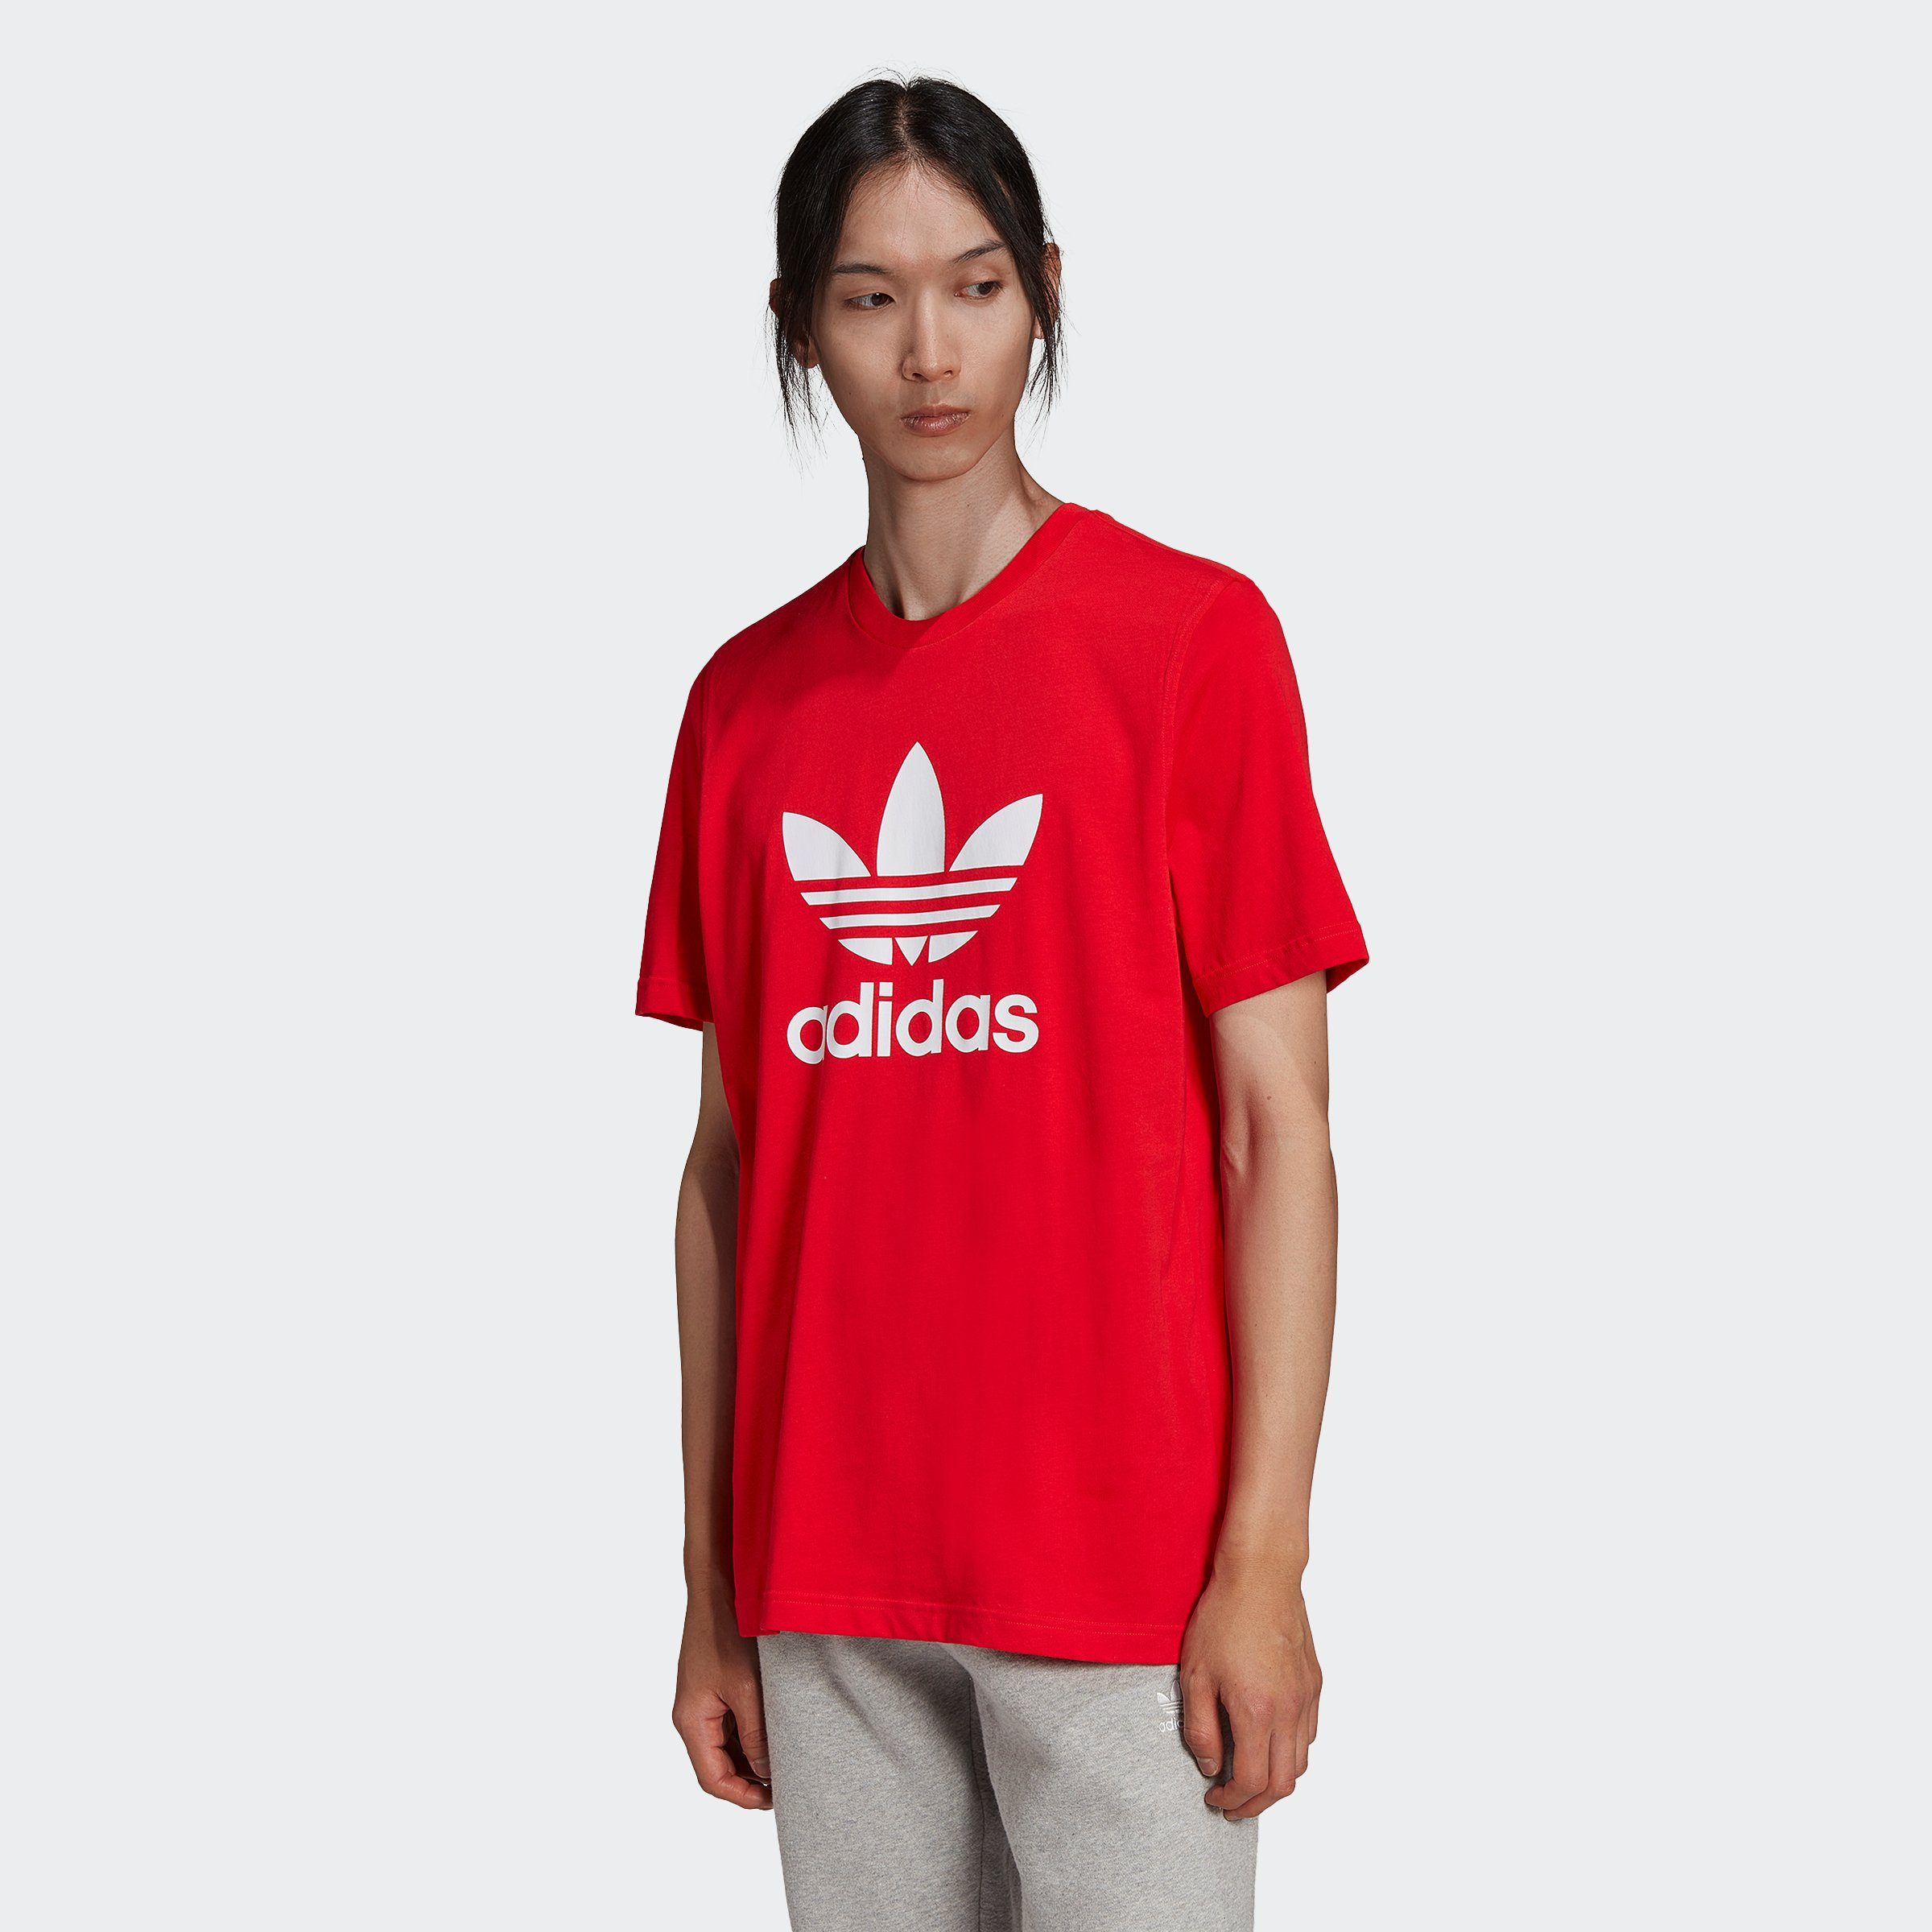 adidas Originals VIVRED/WHITE ADICOLOR T-Shirt CLASSICS TREFOIL